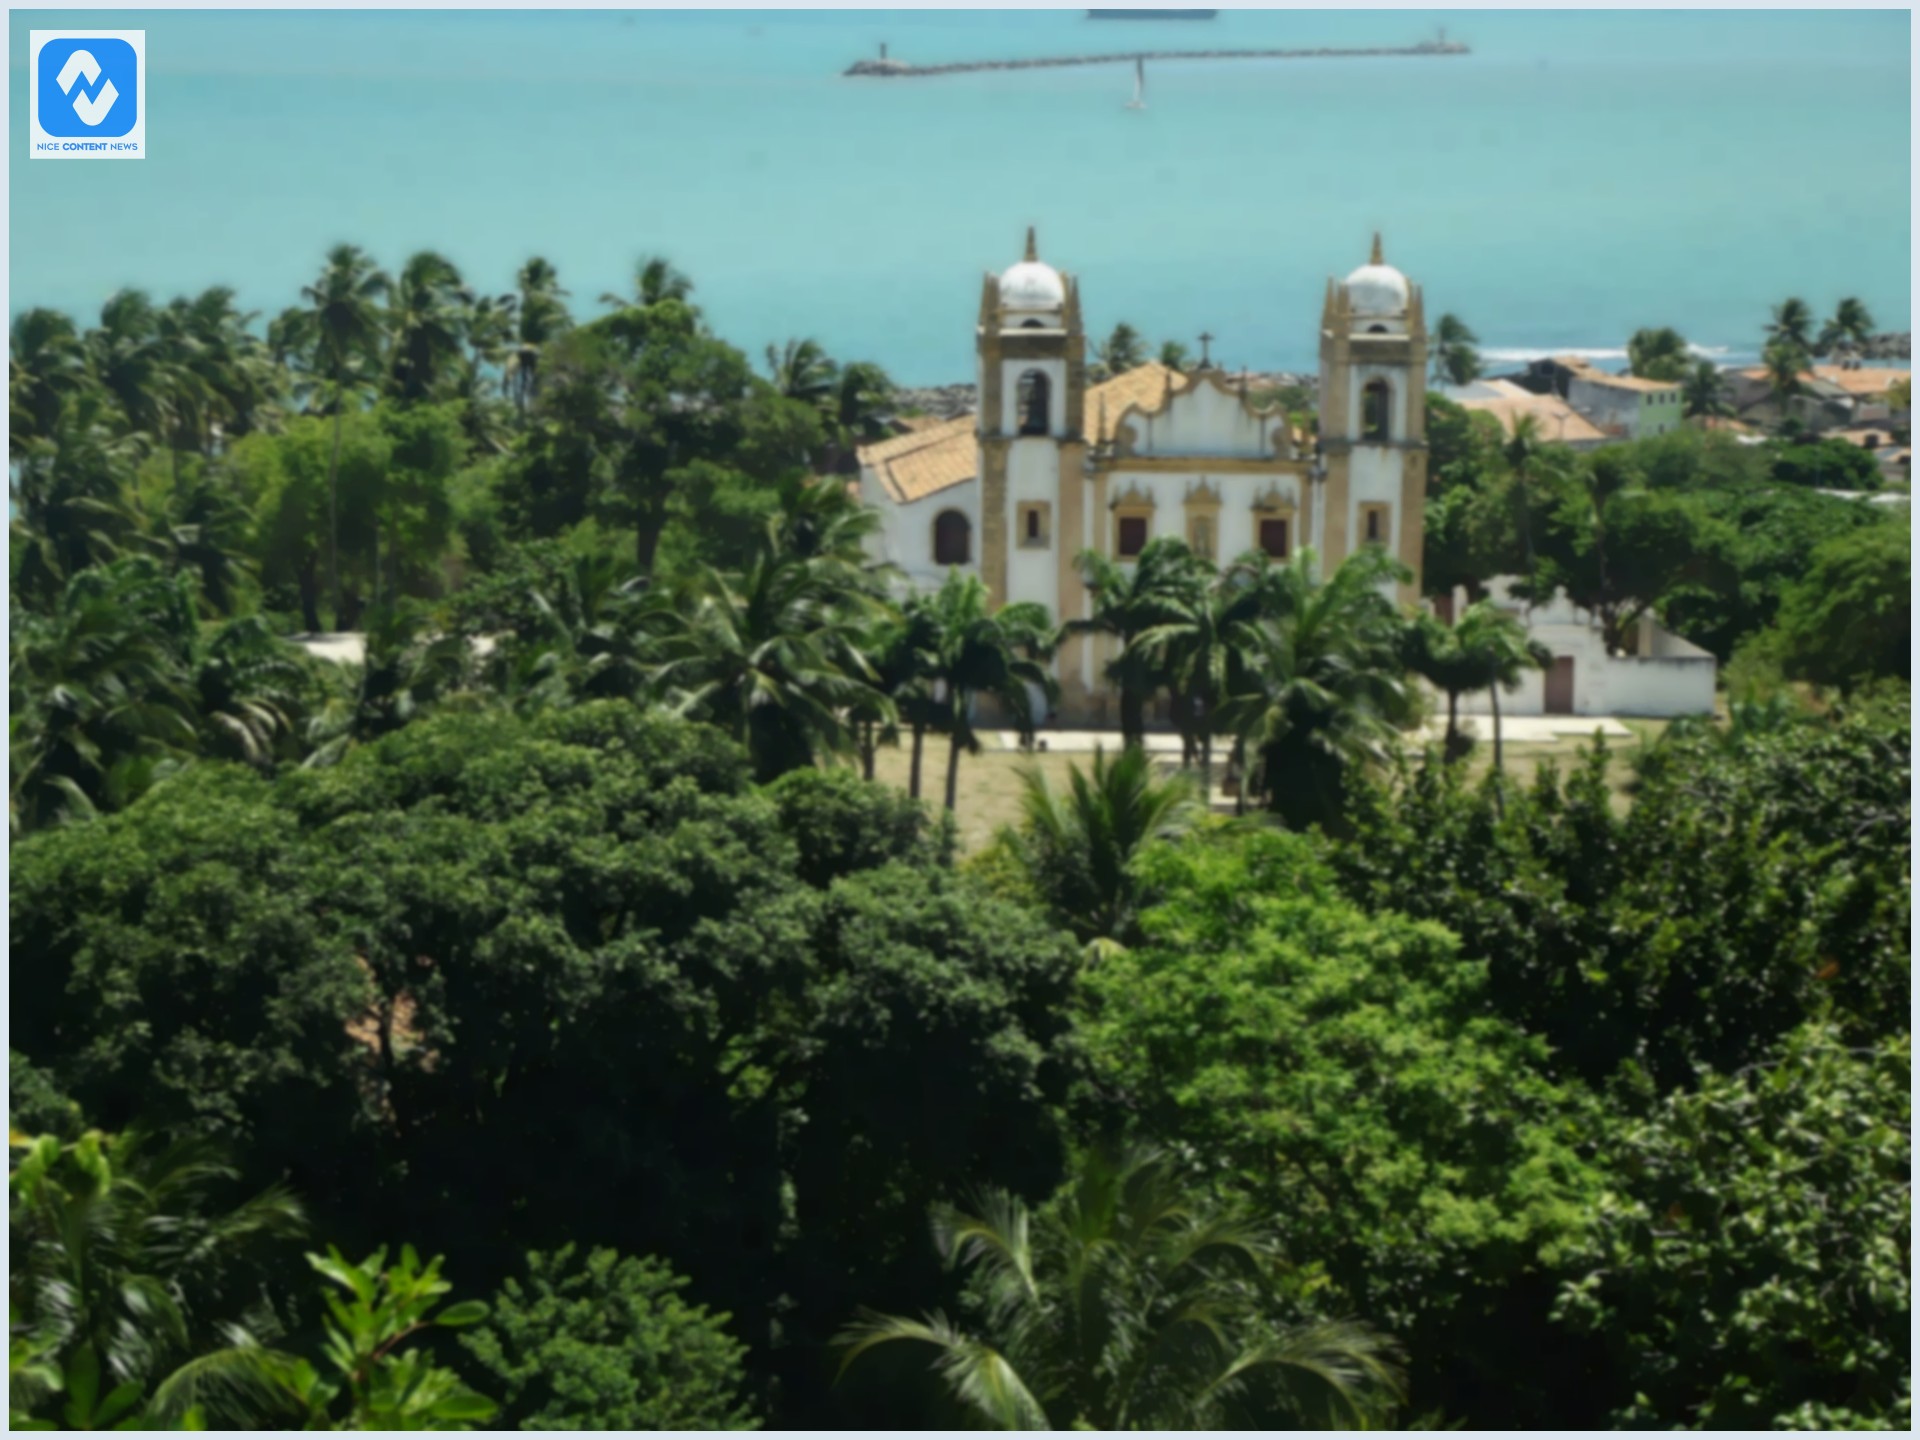 5 lugares turísticos de Recife para conhecer